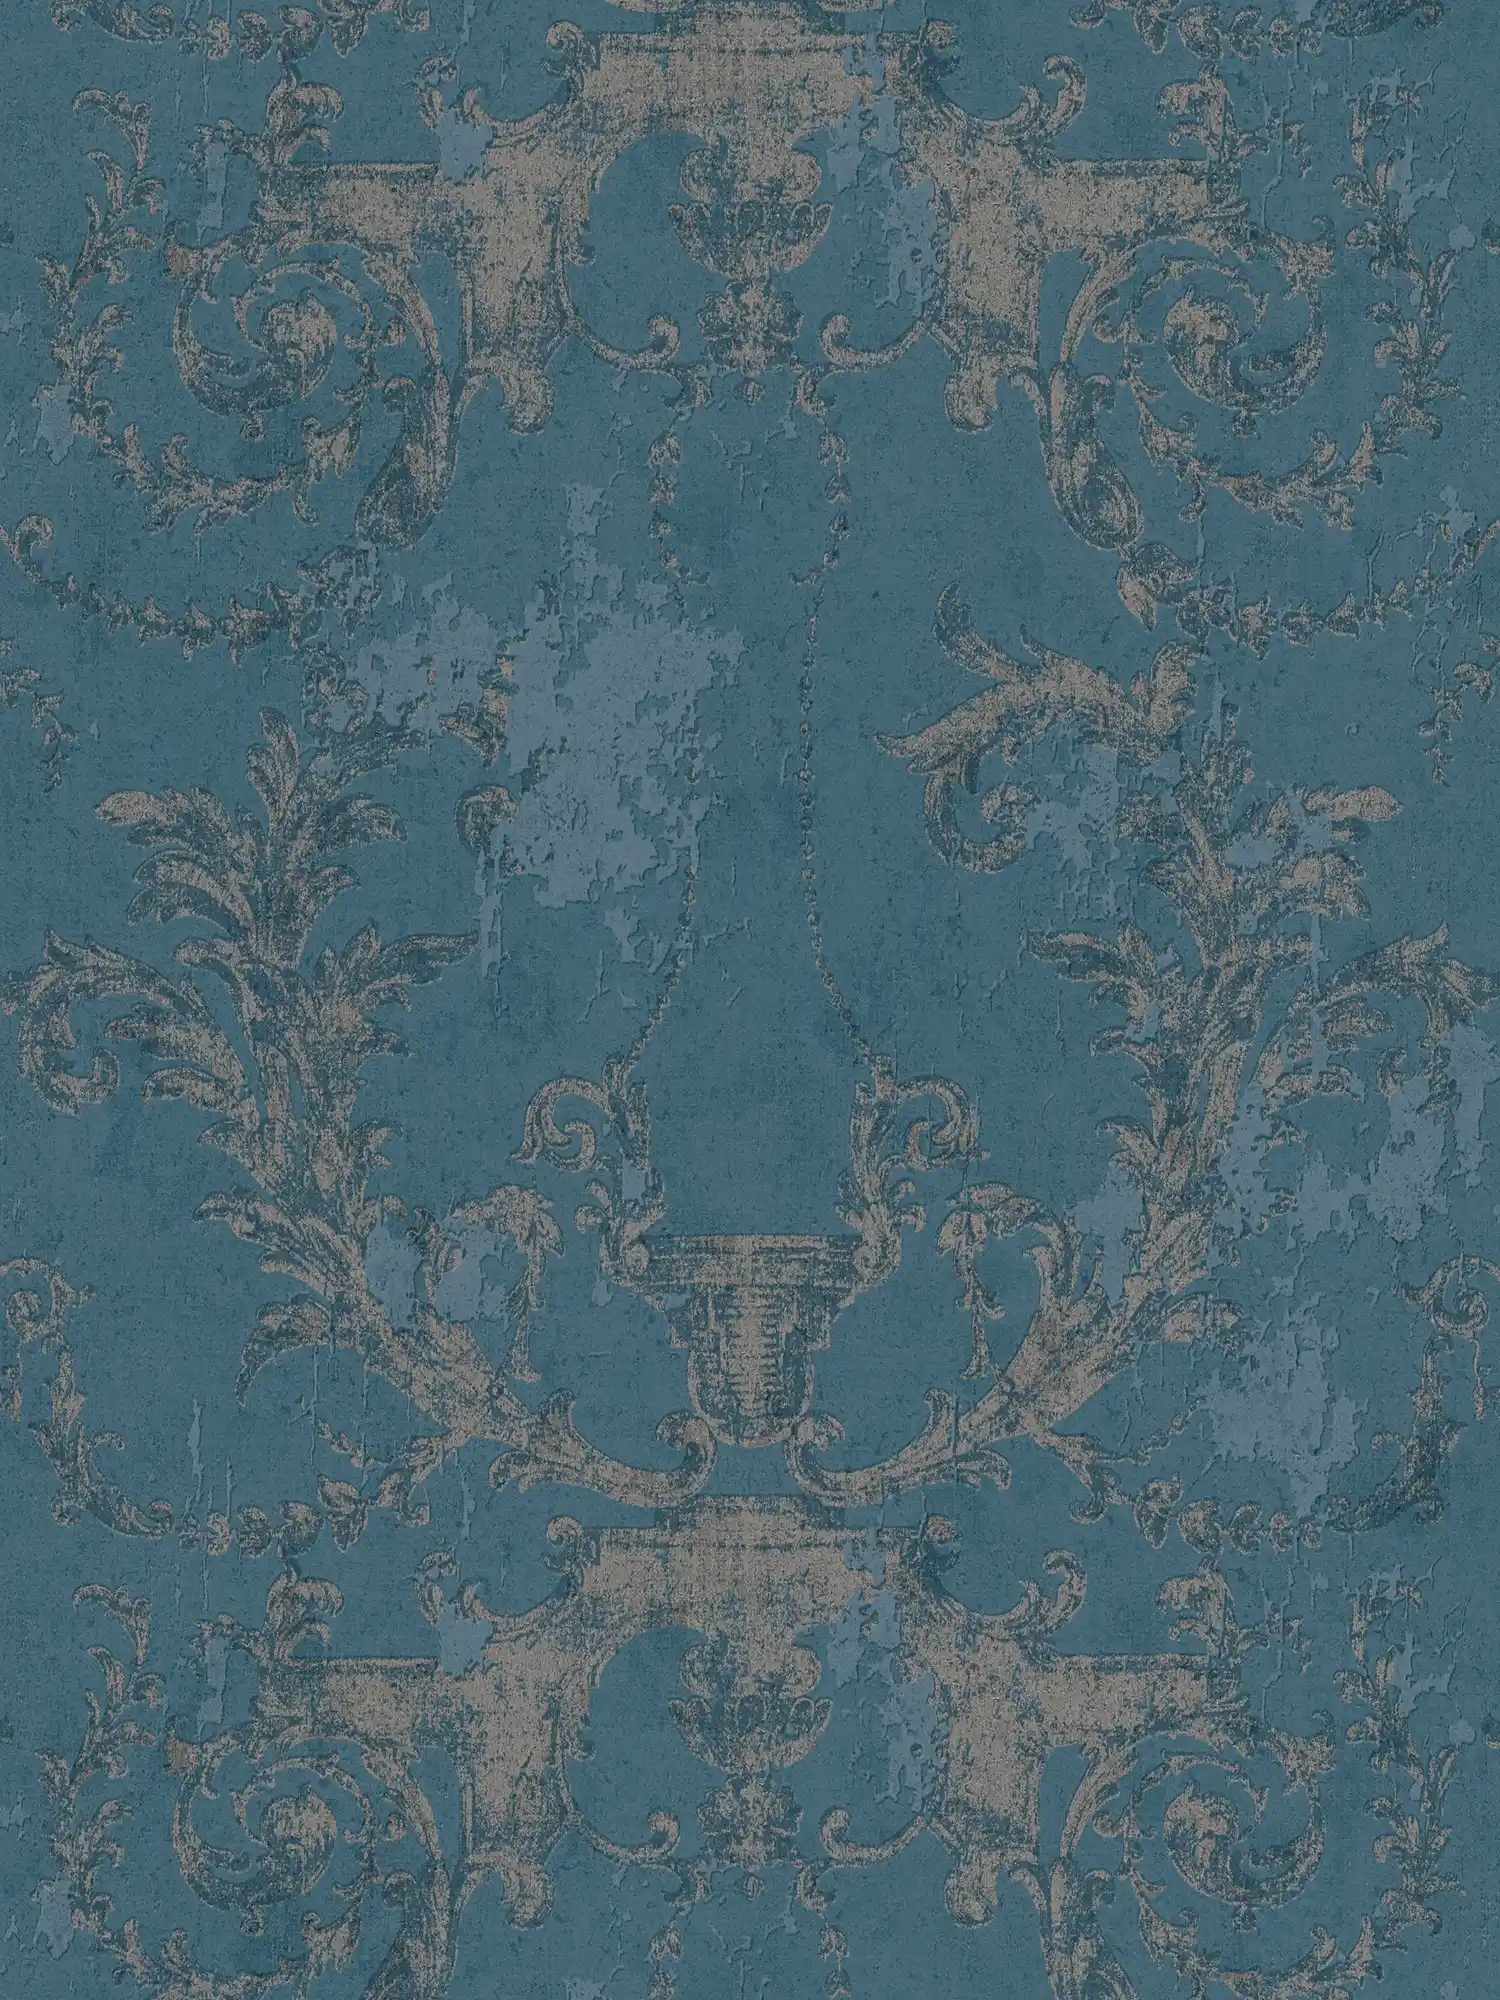 Ornamenteel behang vintage stijl & rustiek - blauw, zilver
